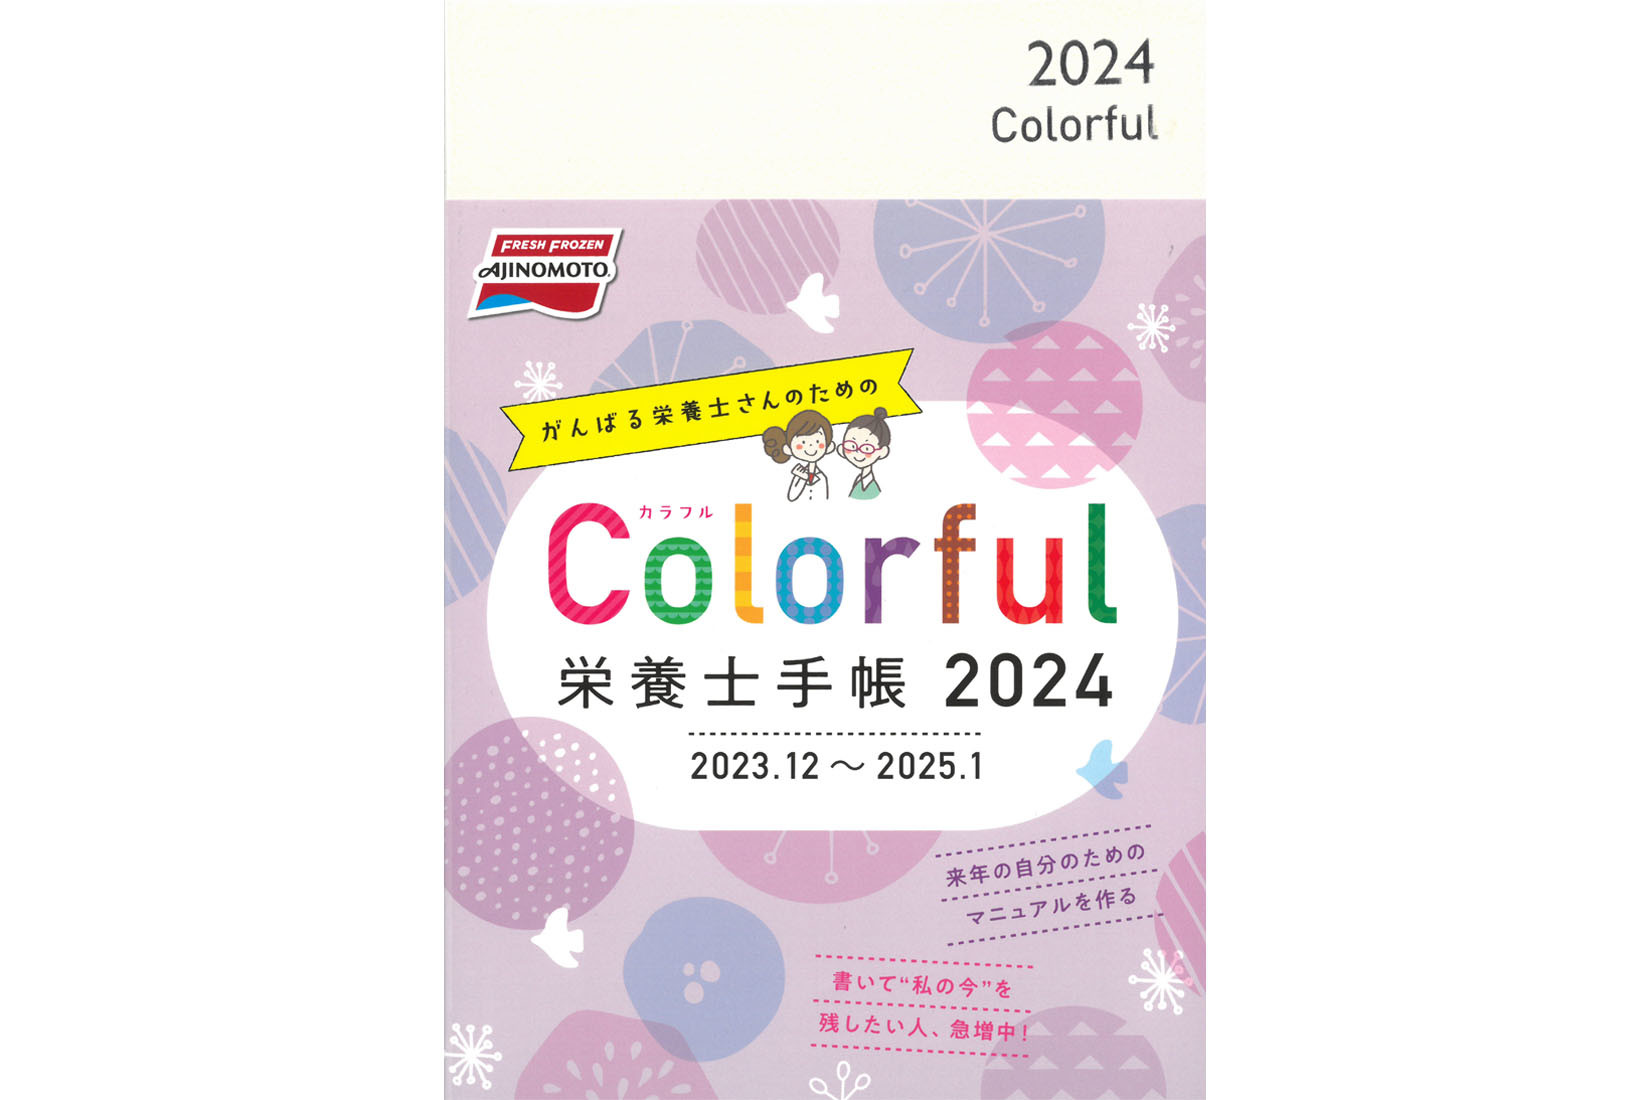 味の素冷凍食品『Colorful栄養士手帳2024』にケアソクコラムの記事が掲載されました